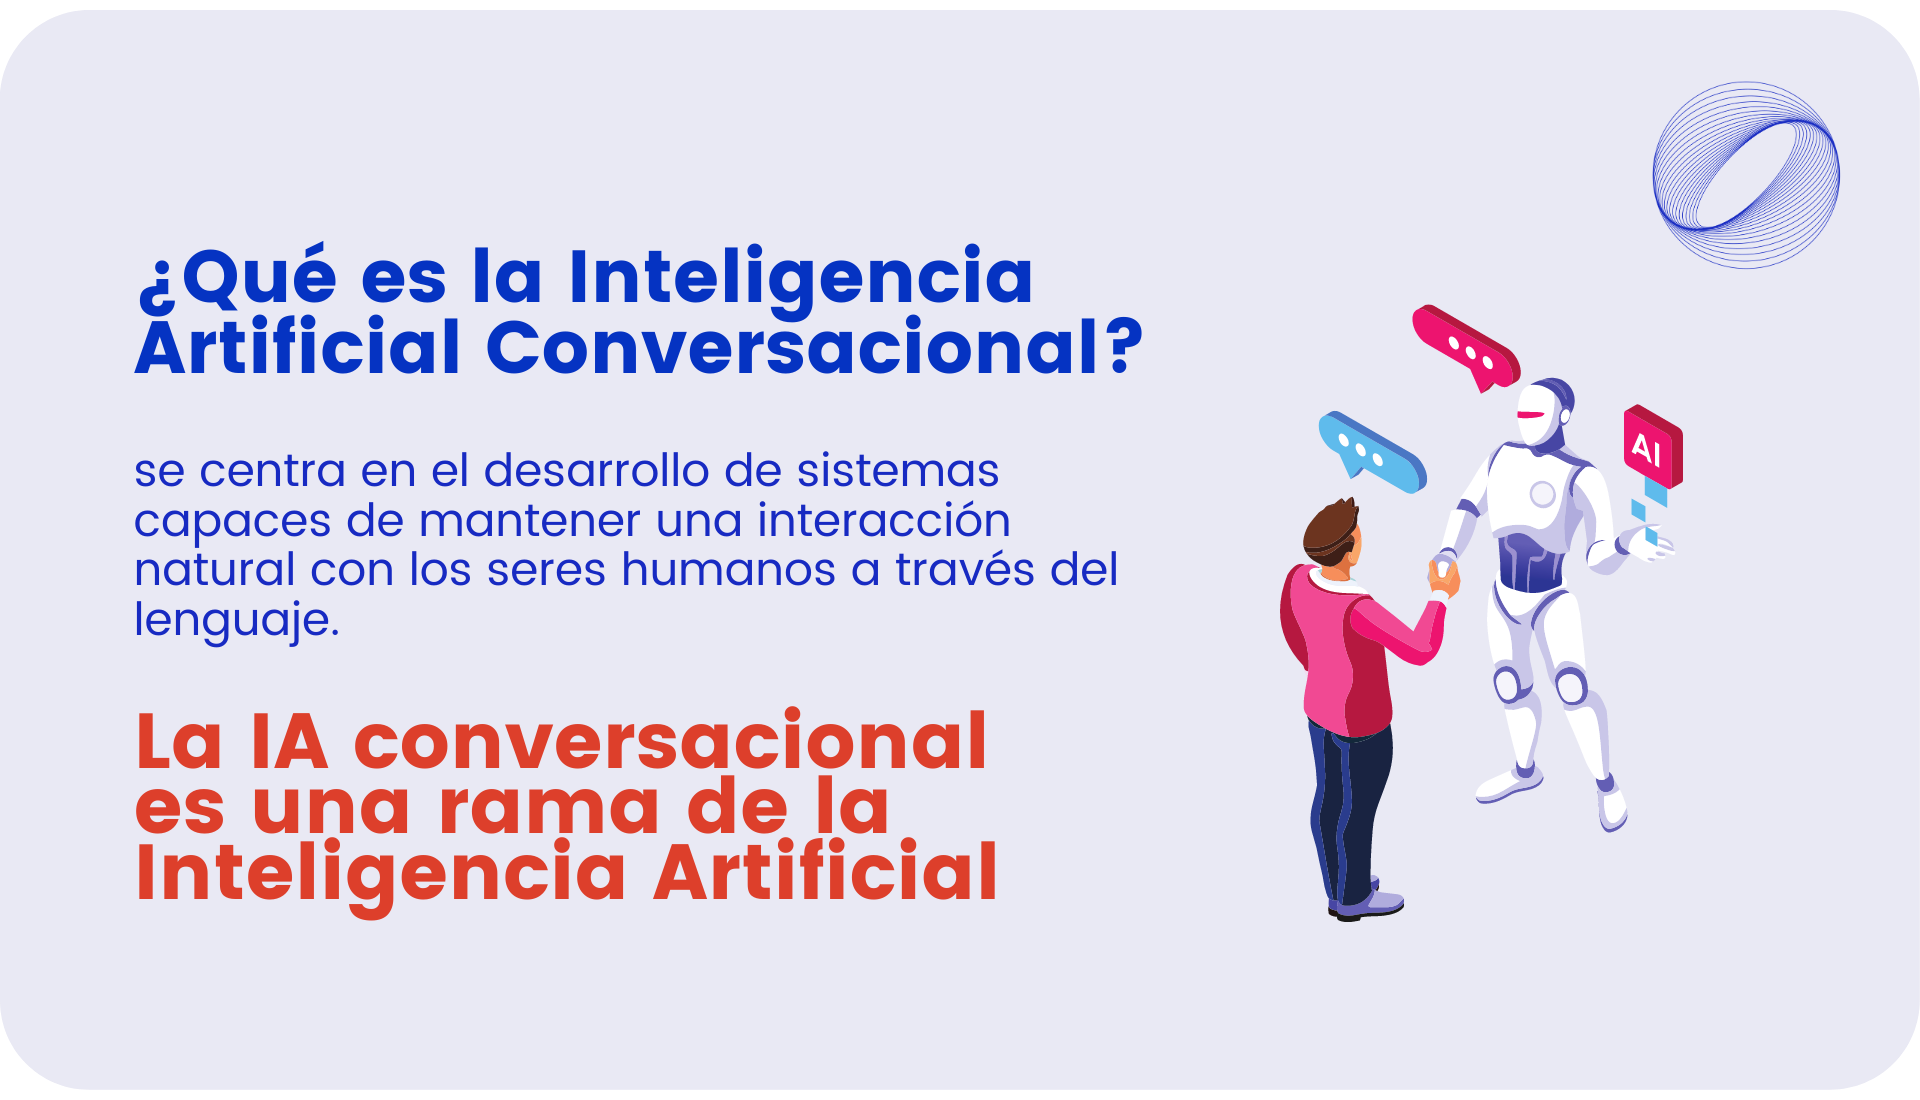 ¿Qué es la Inteligencia Artificial Conversacional